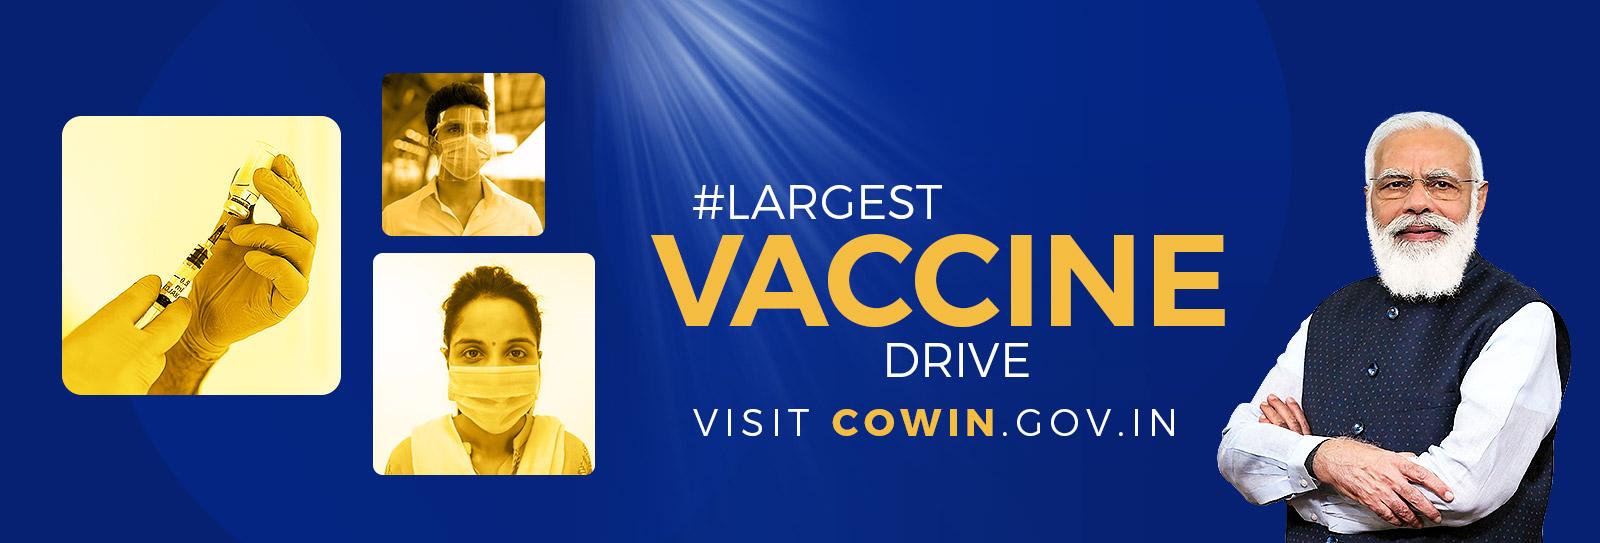 Covid Vaccine 2021